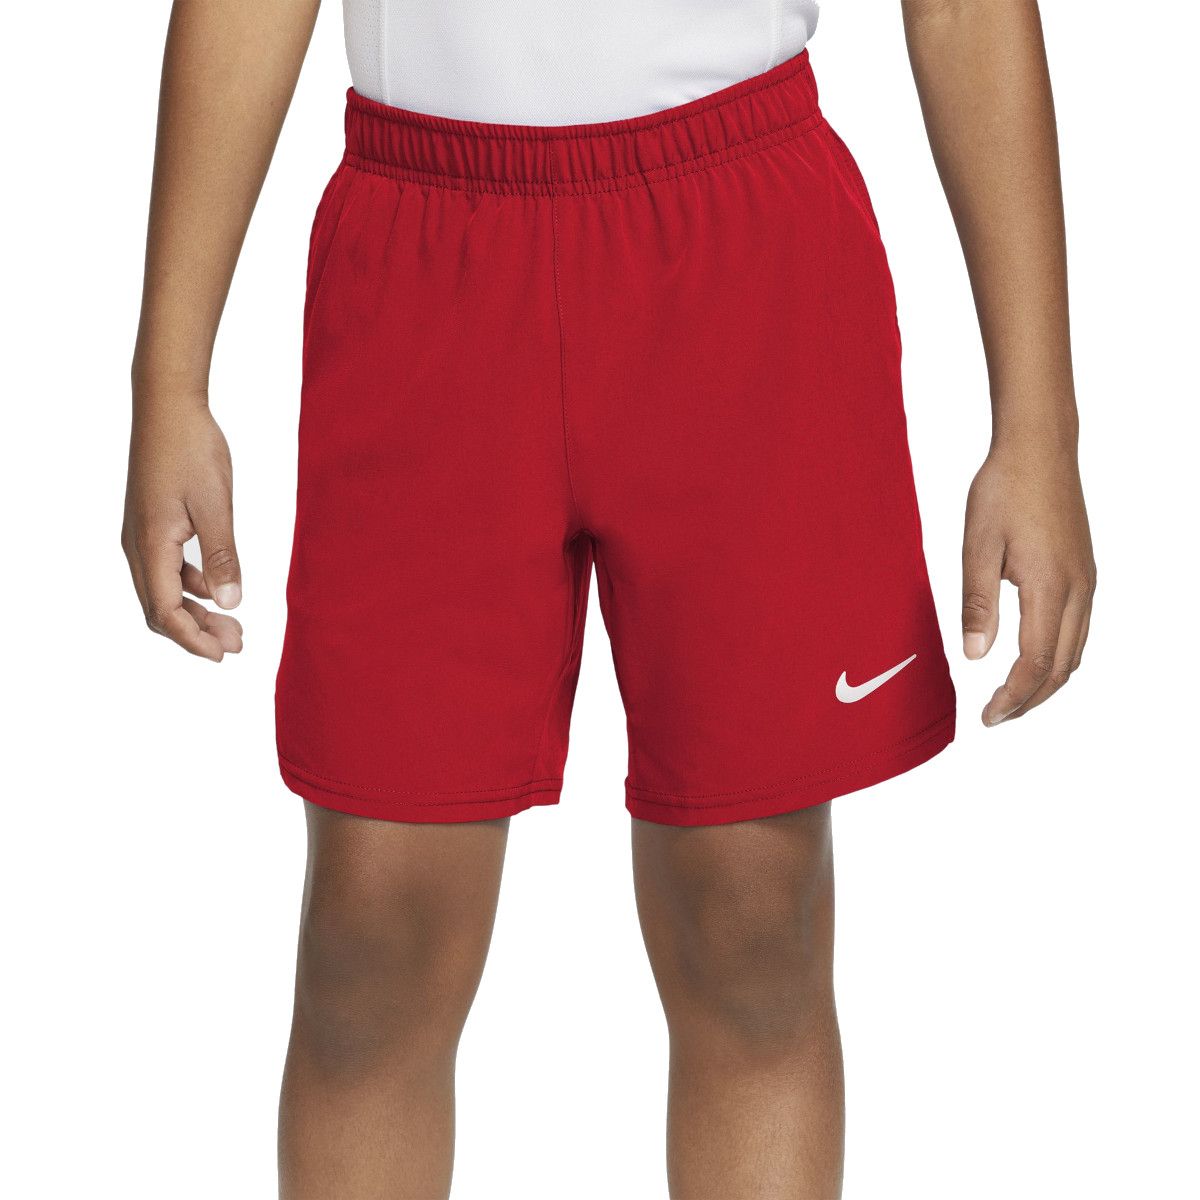 NikeCourt Flex Ace Boy's Shorts